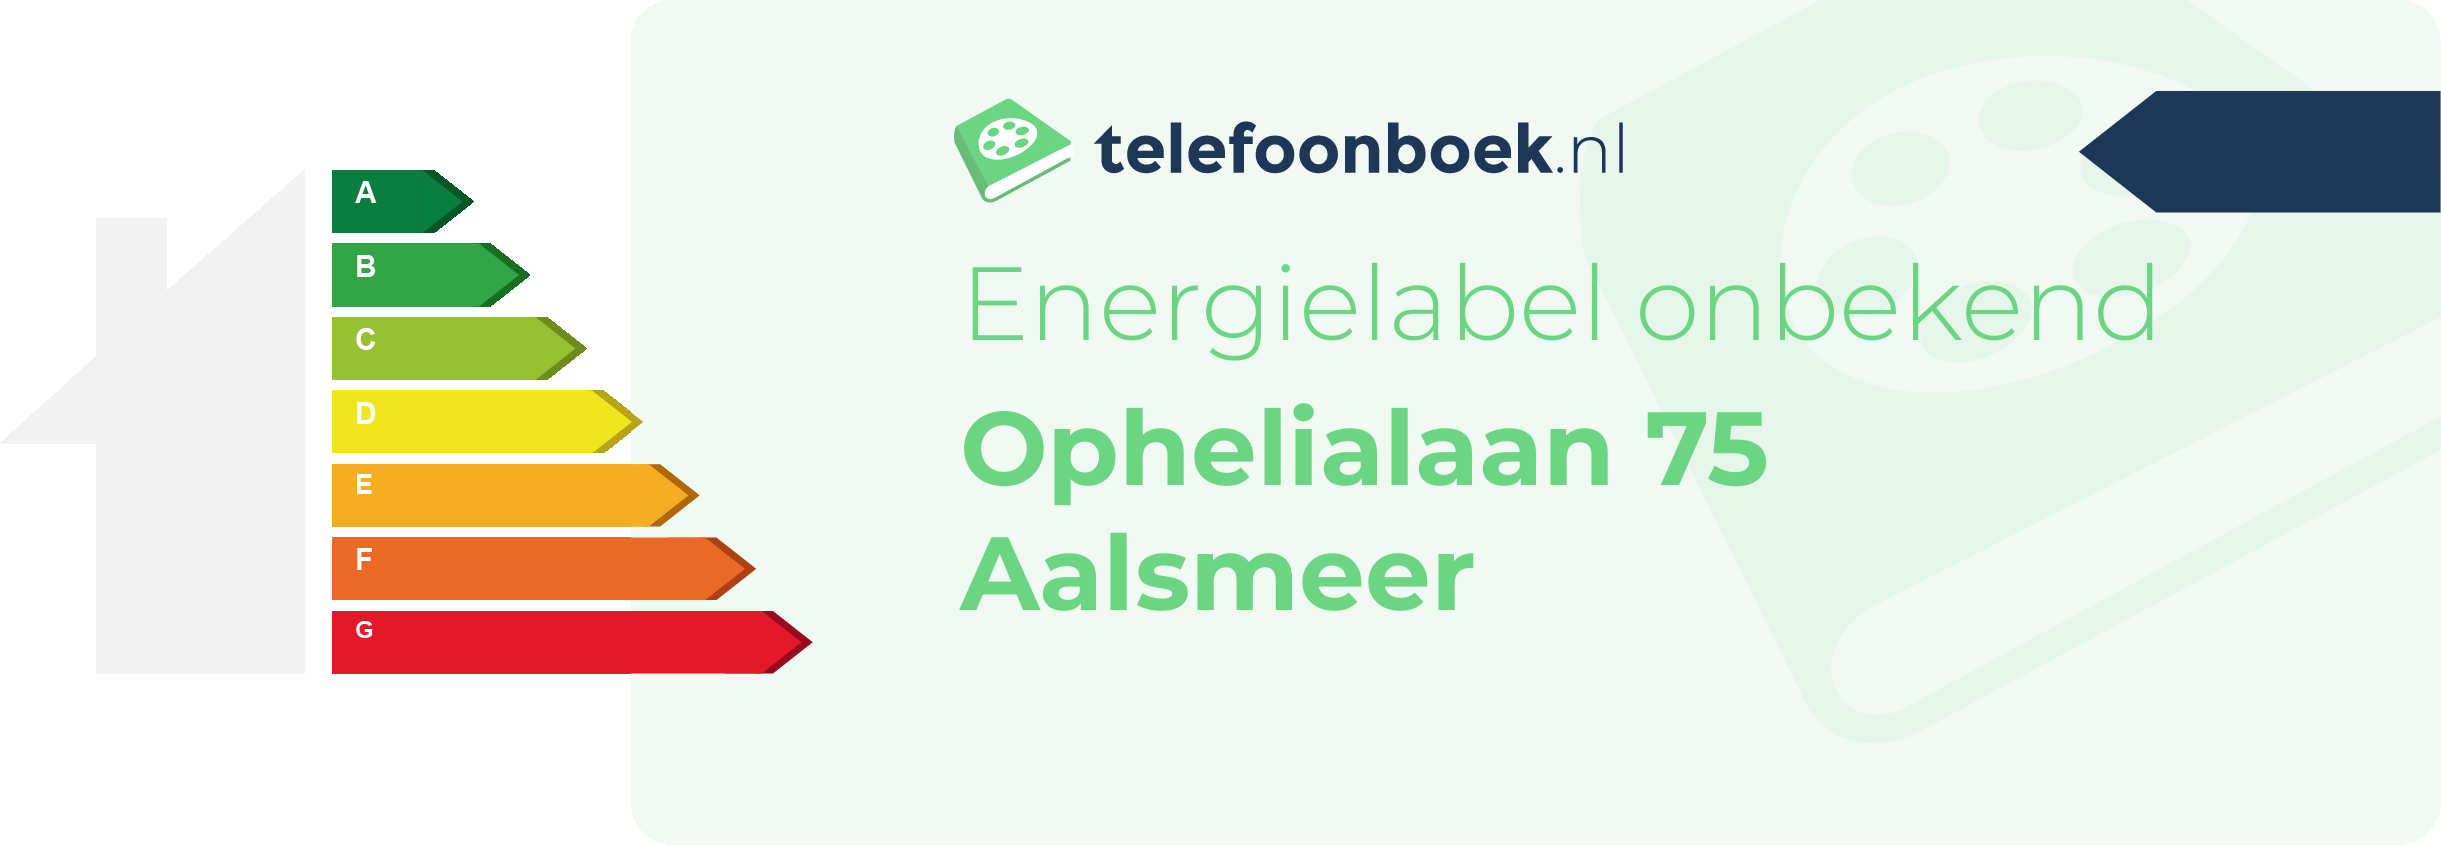 Energielabel Ophelialaan 75 Aalsmeer